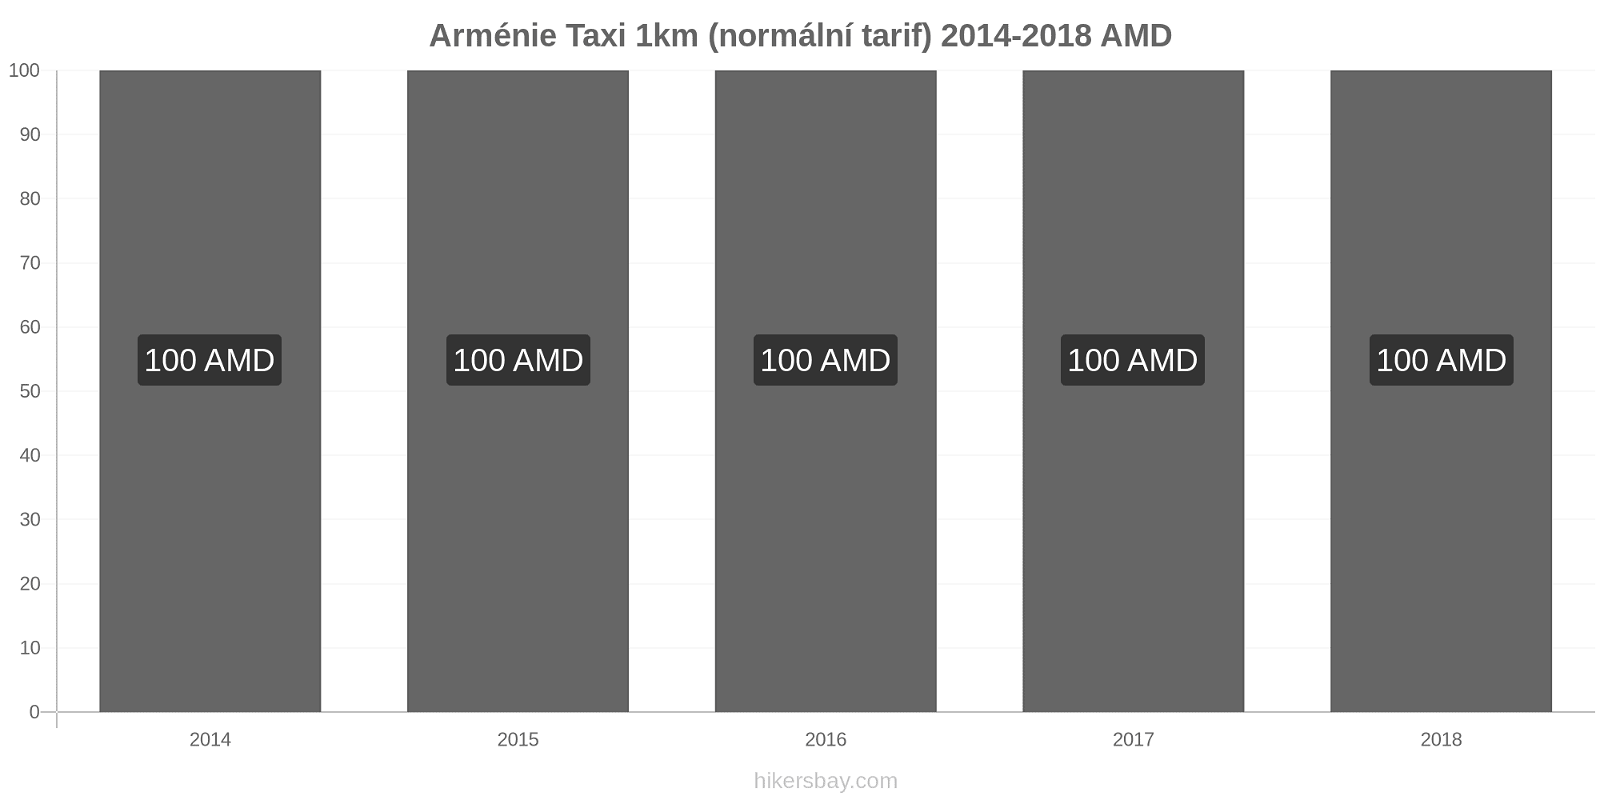 Arménie změny cen Taxi 1km (normální tarif) hikersbay.com